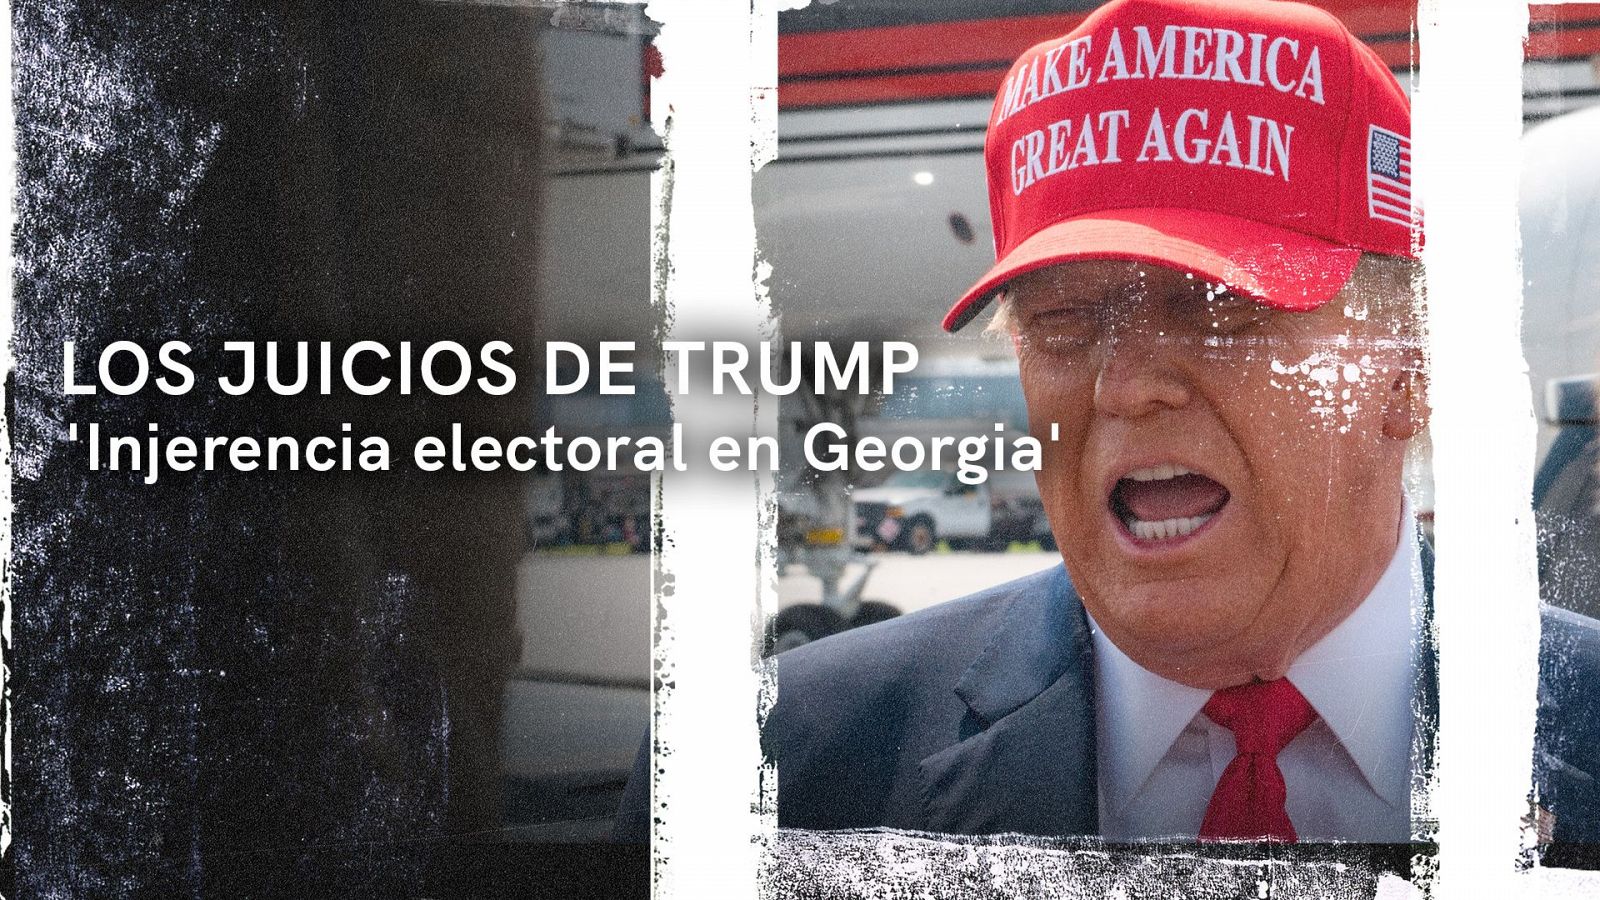 Los juicios DE Trump: injerencia electoral en Georgia